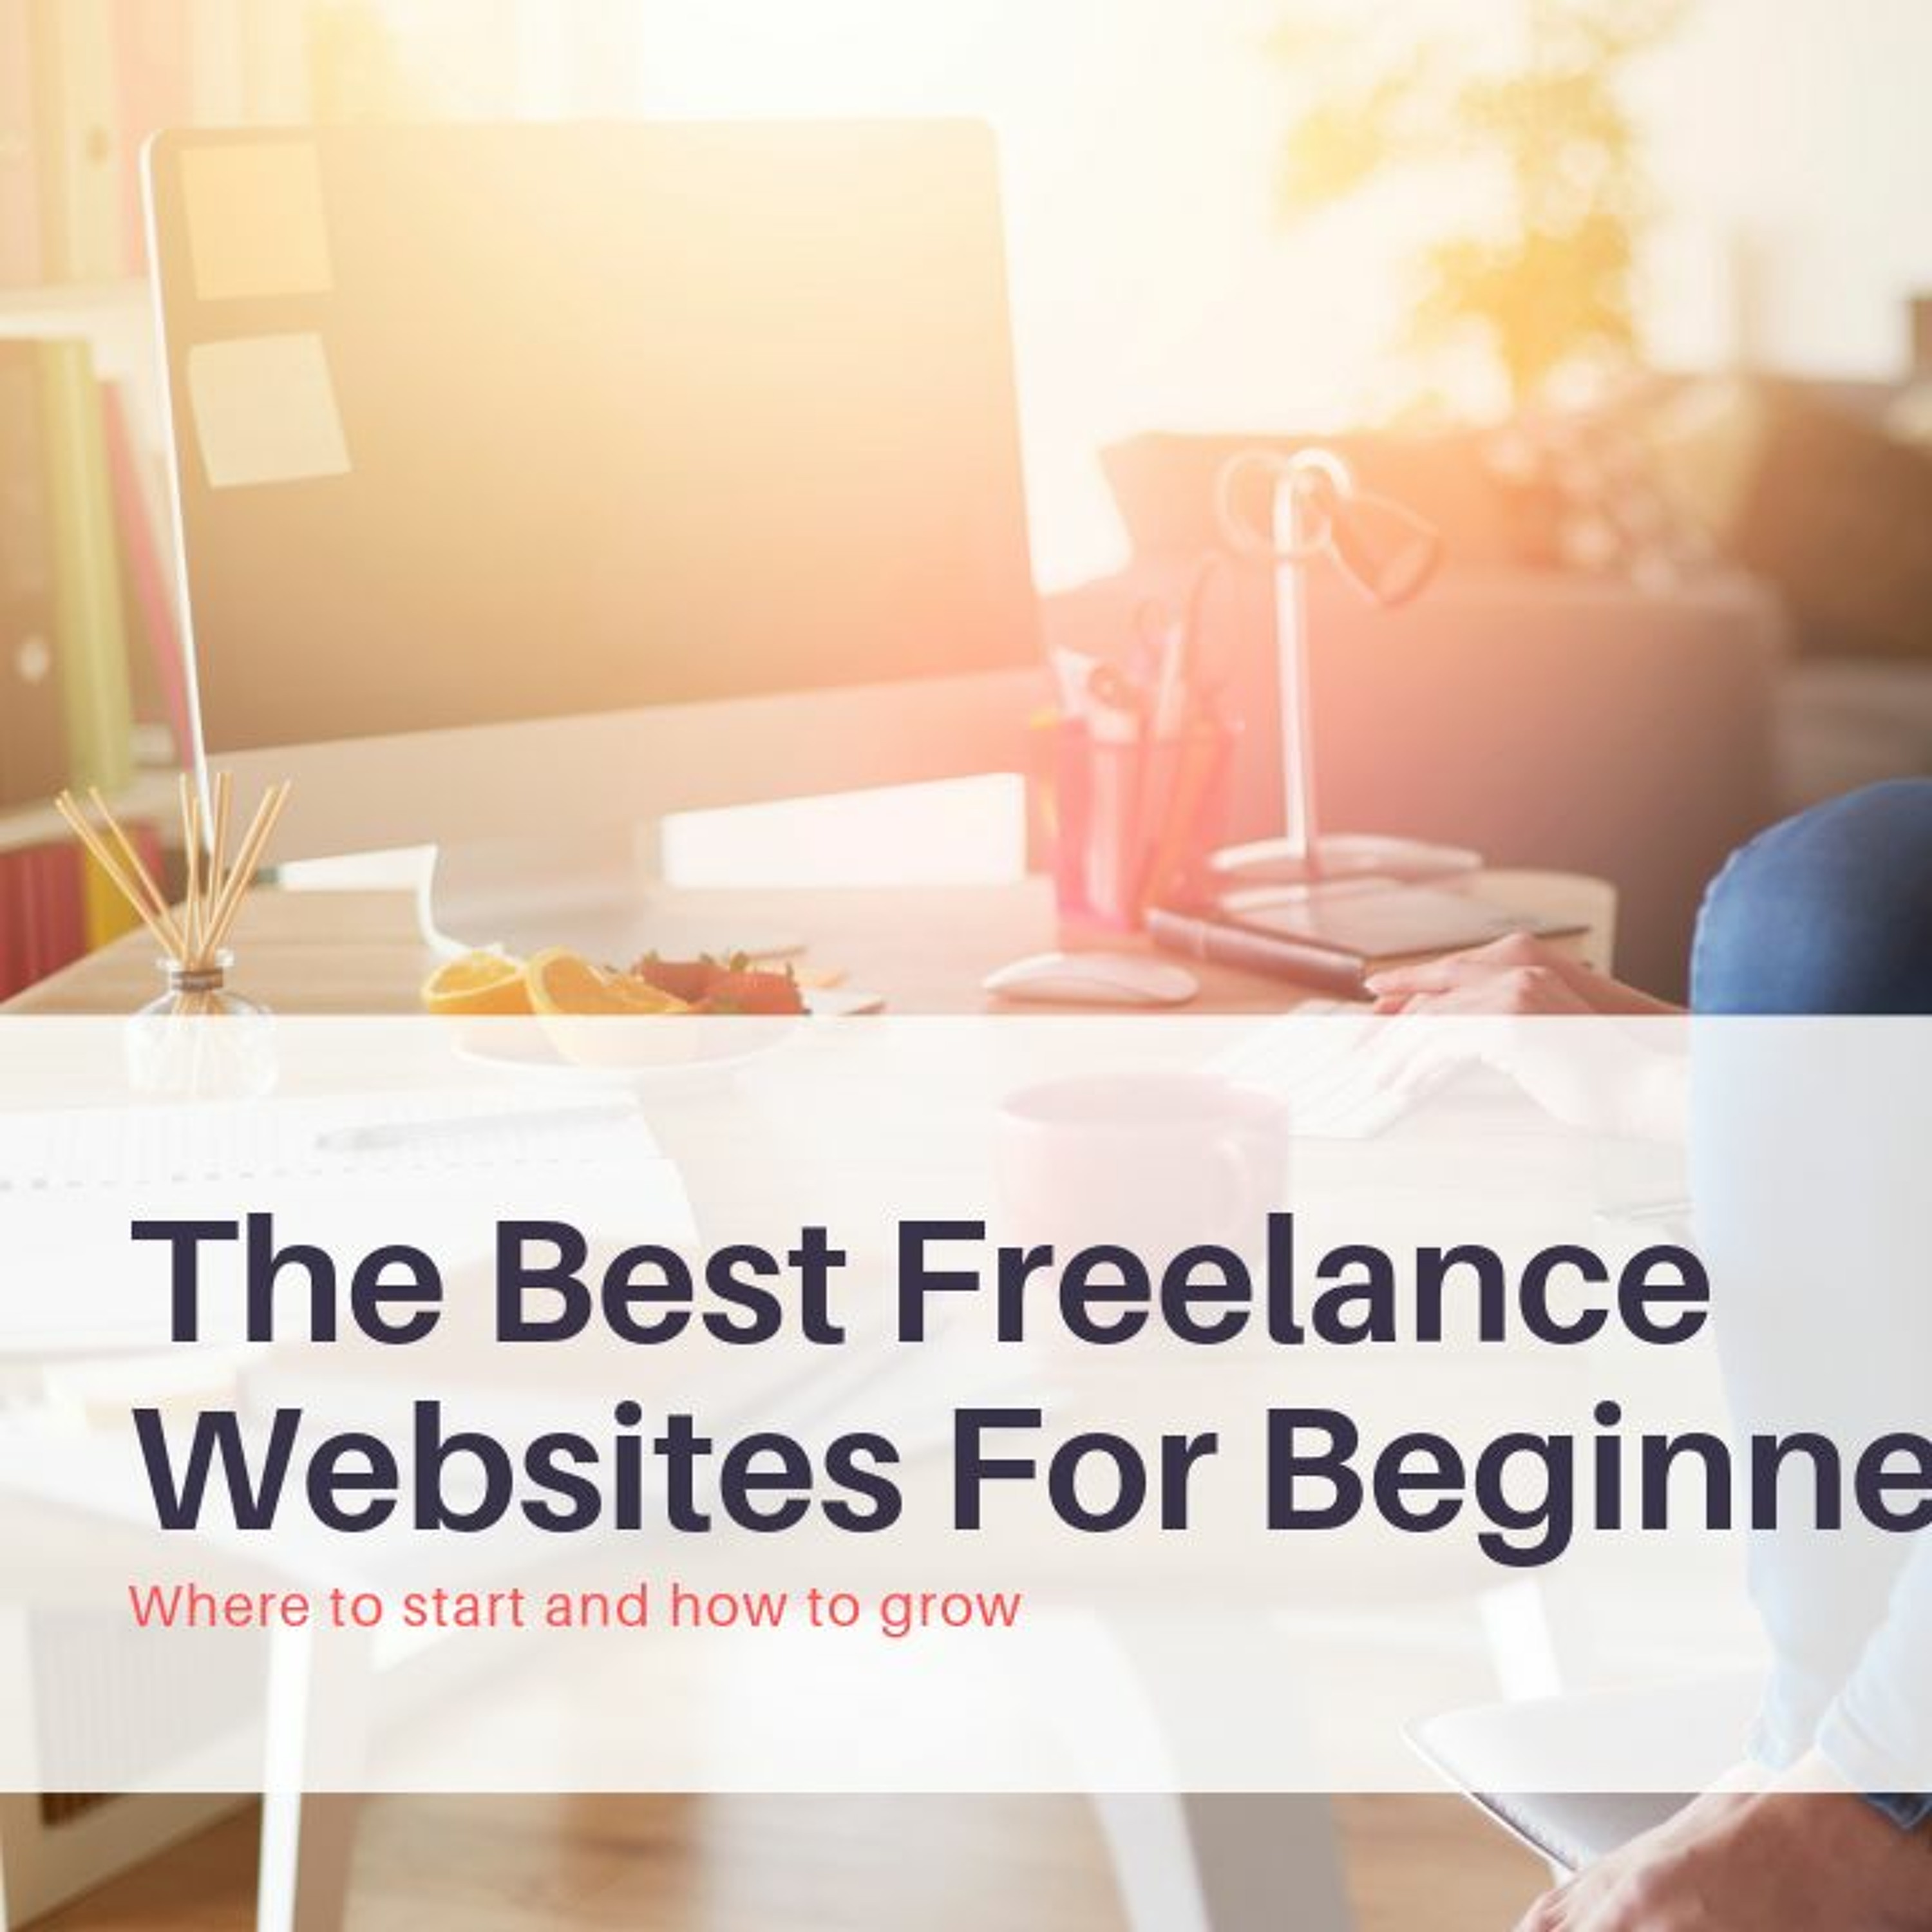 The best freelance websites for beginners